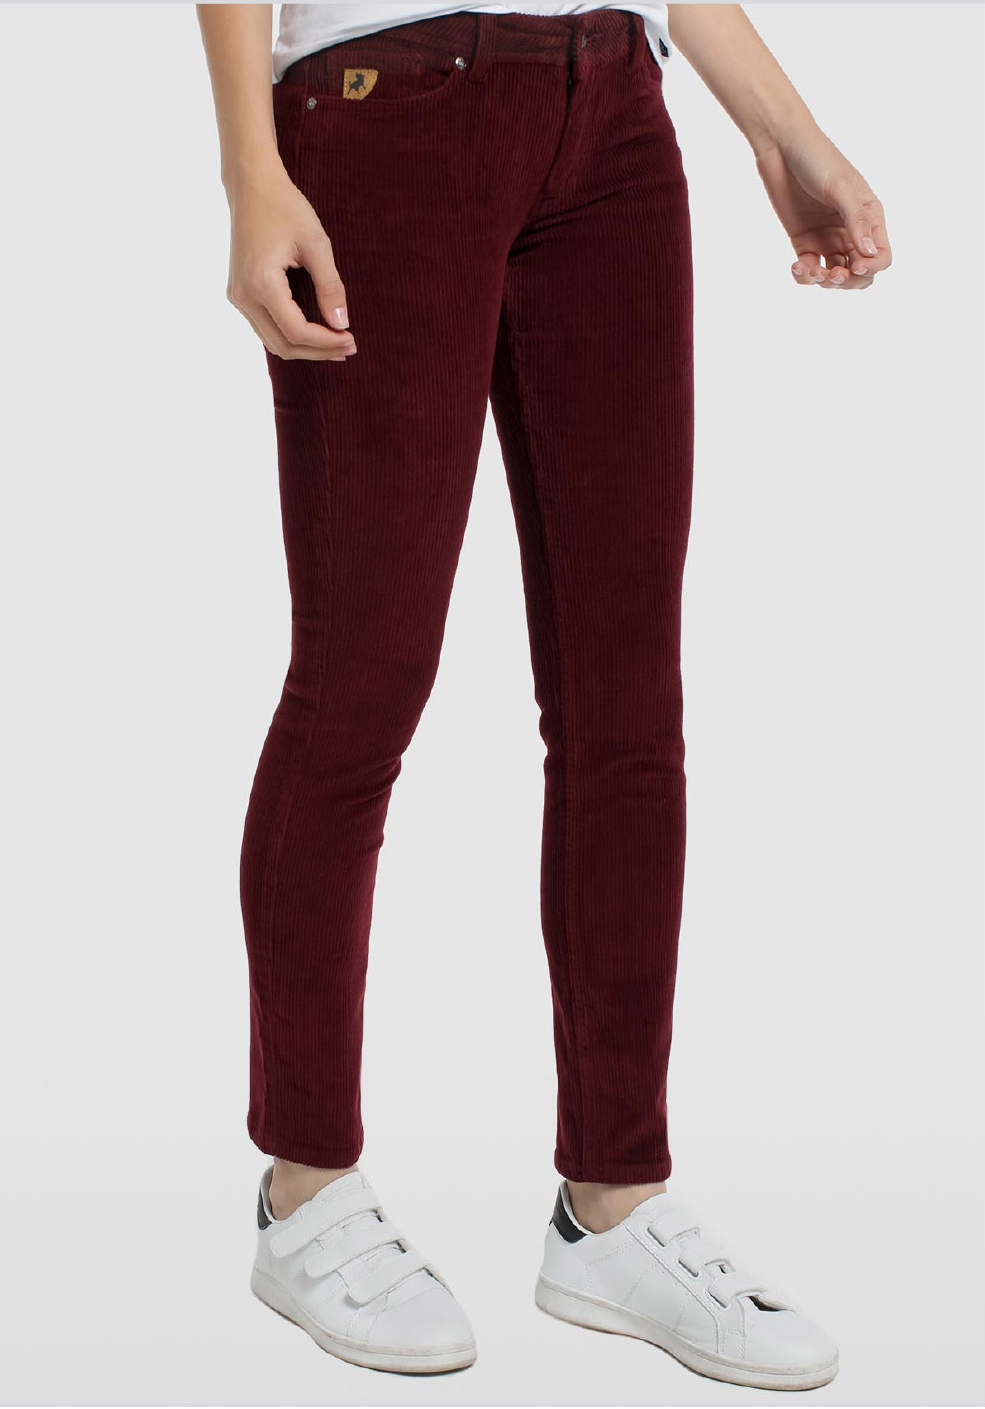 Lois pantalones vaqueros de pana de mujer Slimmy pitillo 20156/558 rojo